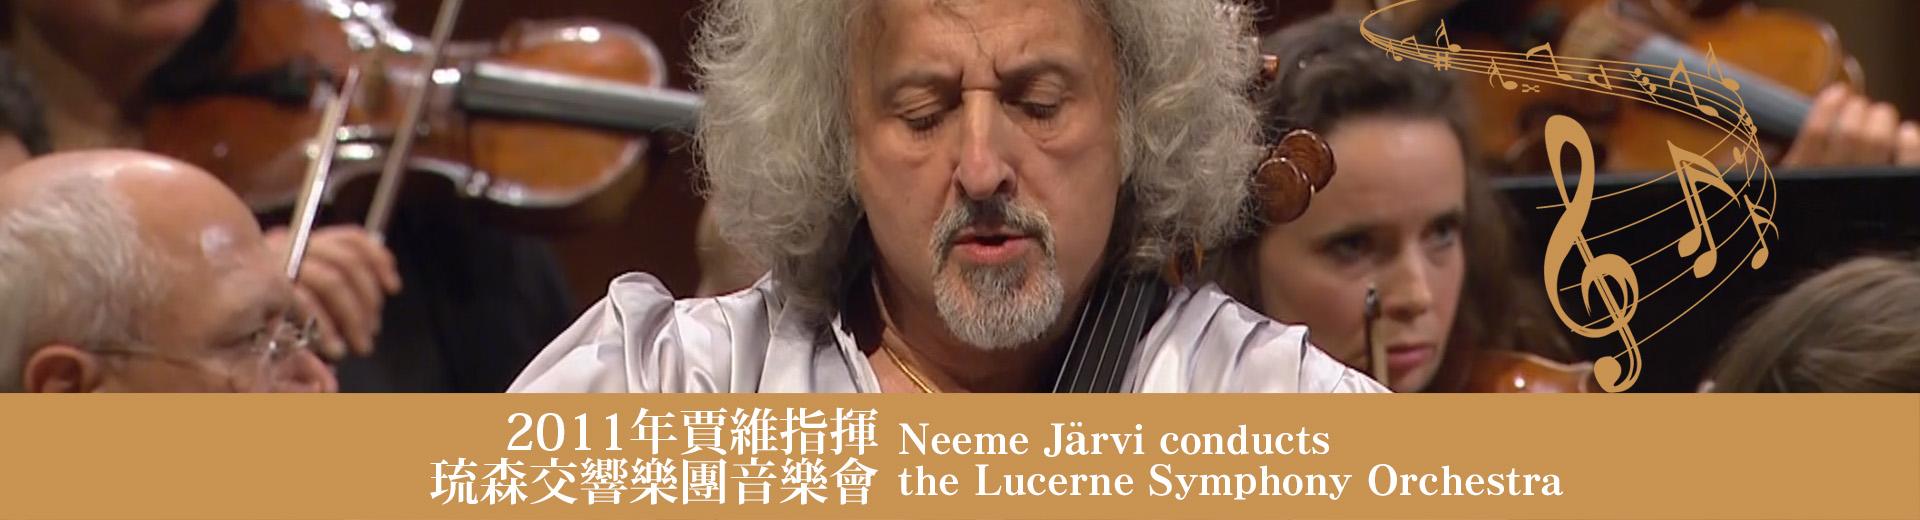 2011年賈維指揮琉森交響樂團音樂會 Neeme Järvi conducts the Lucerne Symphony Orchestra